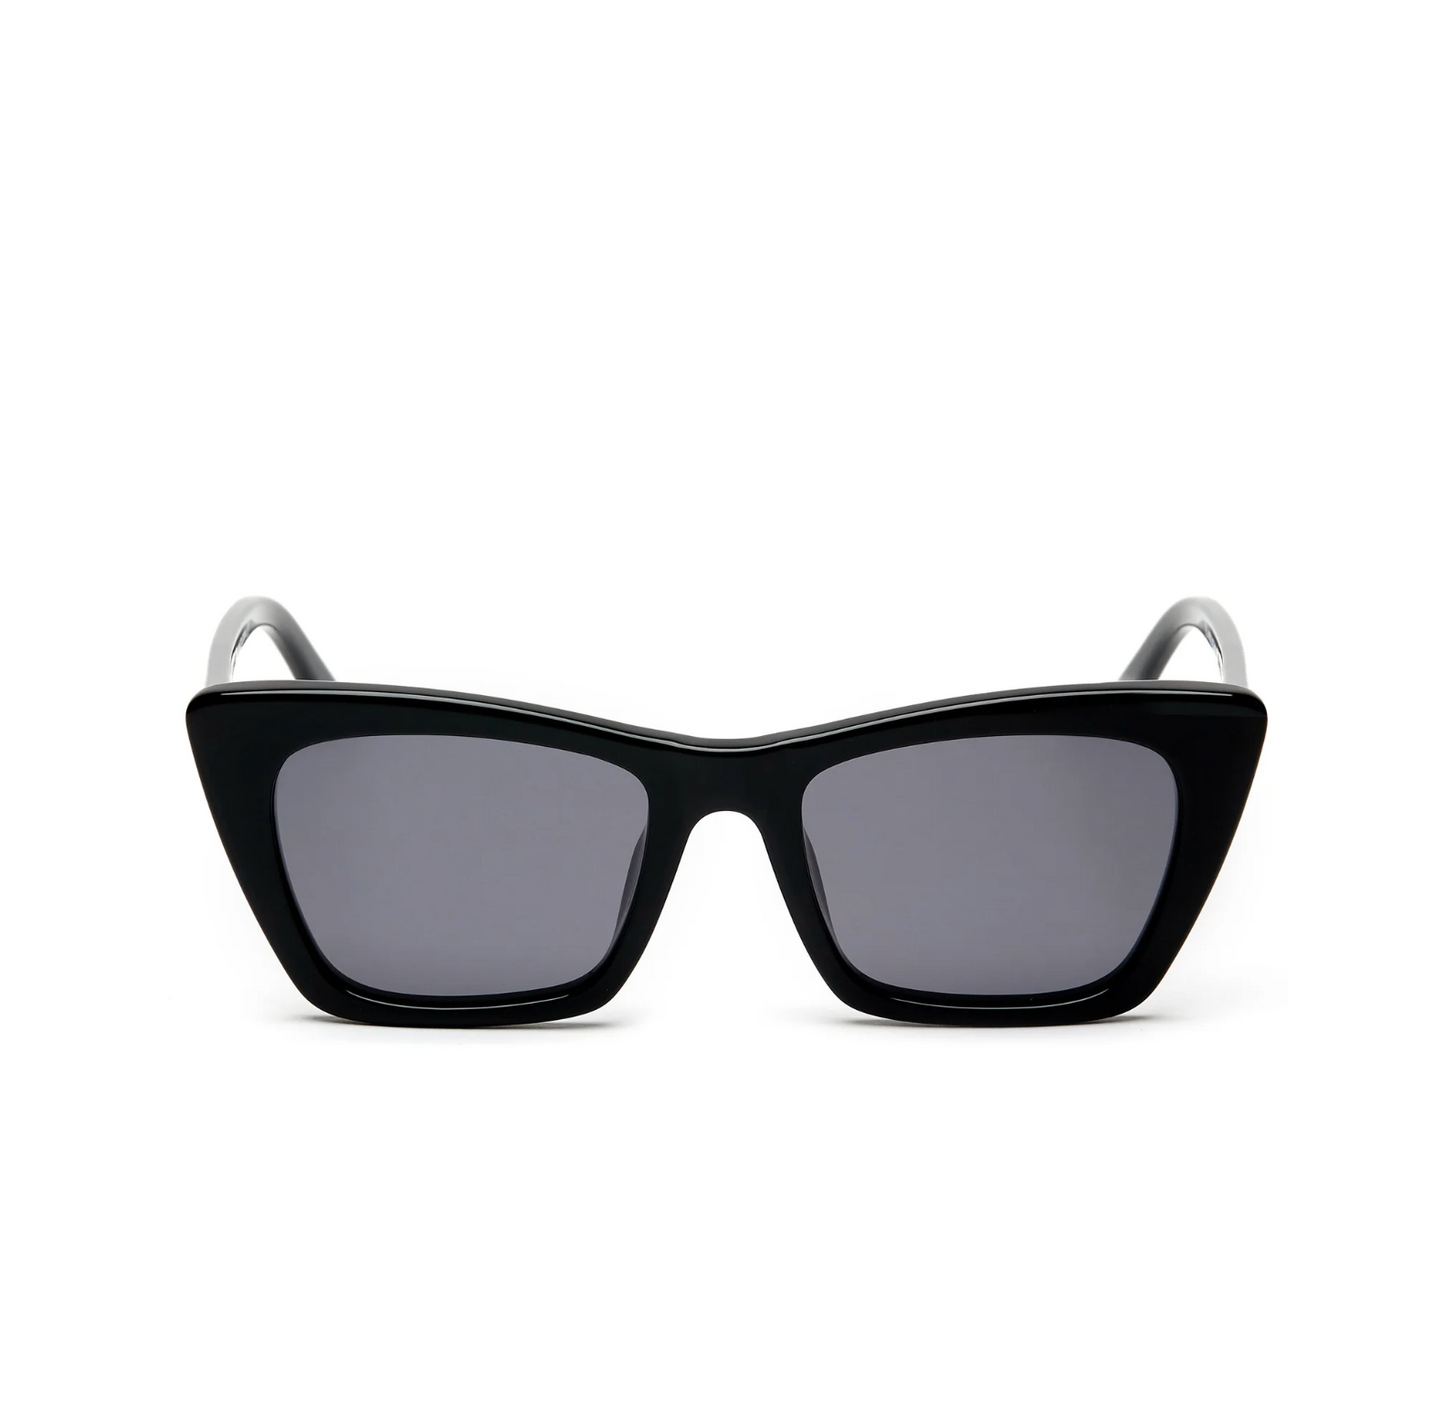 Essential Polarized Sunglasses - Black - Eleventh Hour